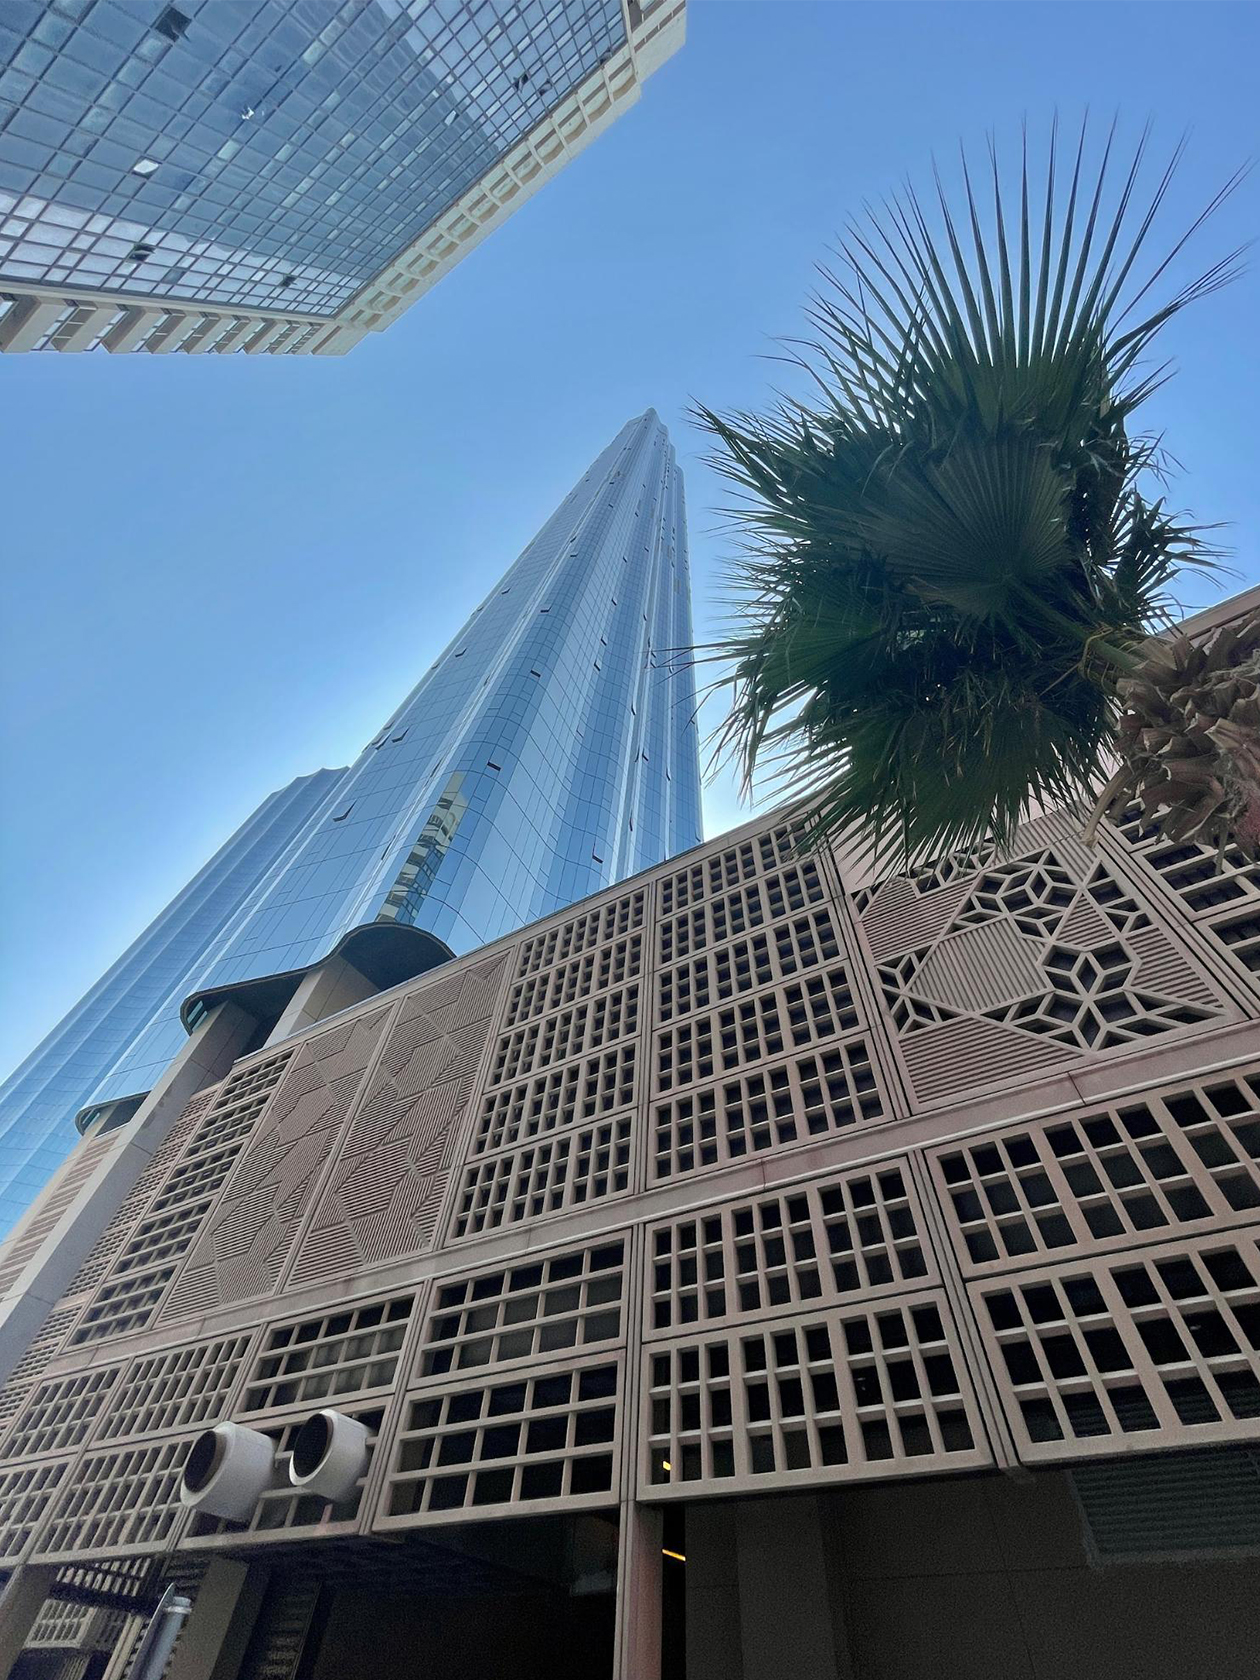 При этом в районе Всемирного торгового центра Абу⁠-⁠Даби сложилось впечатление, что ты где⁠-⁠то в Астане, — за счет песочных оттенков зданий, широких проспектов и огромных фигур кувшинов, ладьи. Песочное здание — трехэтажный прилегающий World Trade Center Mall